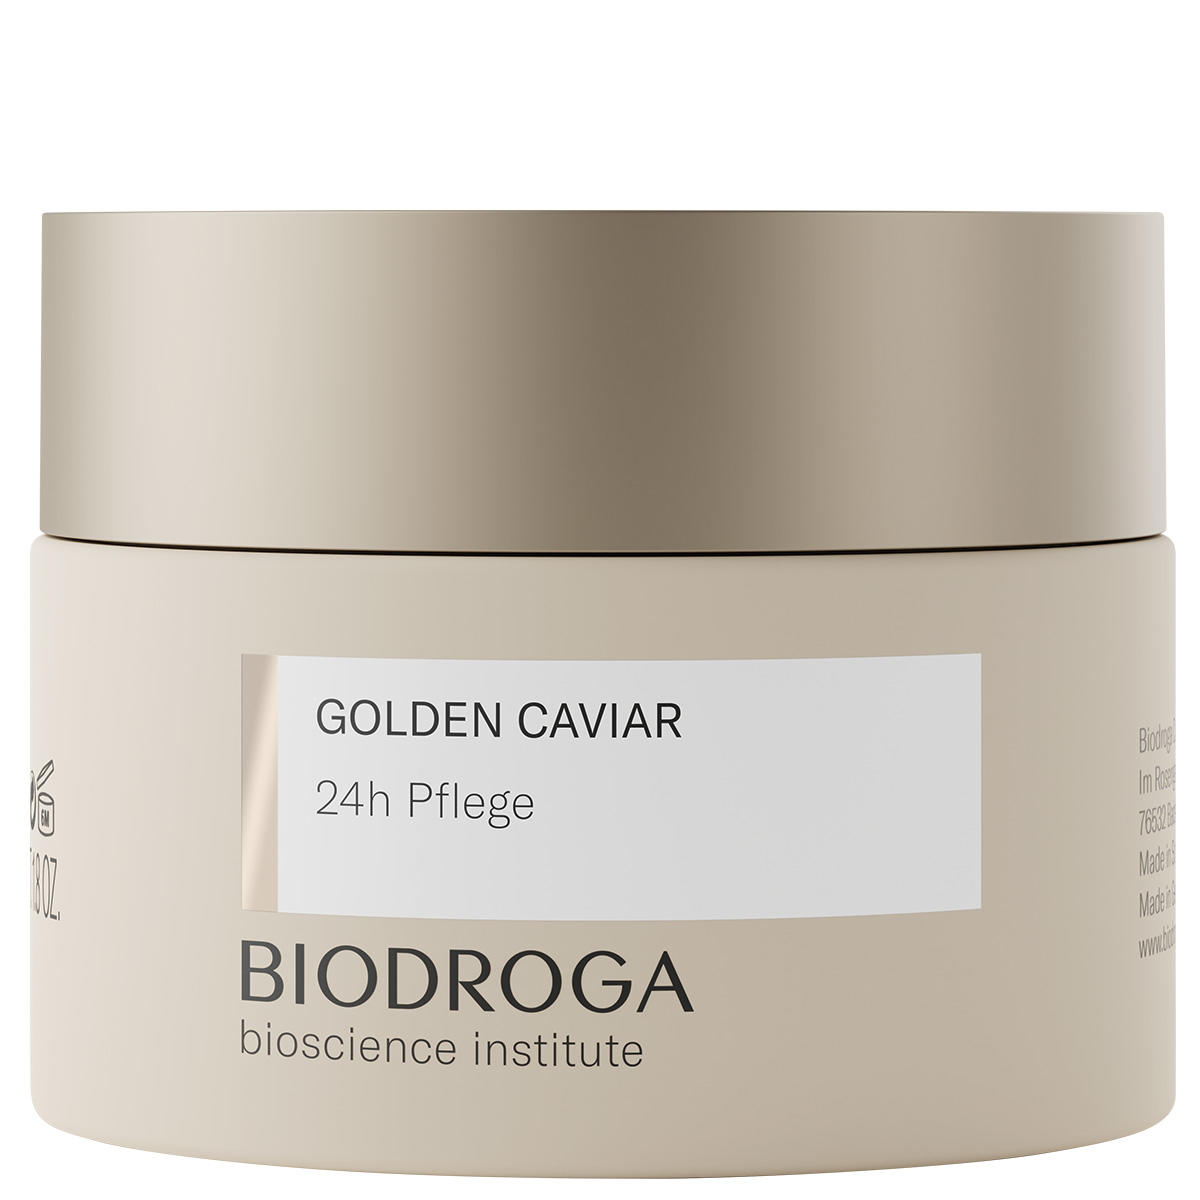 BIODROGA Bioscience Institute GOLDEN CAVIAR 24h care 50 ml - 1